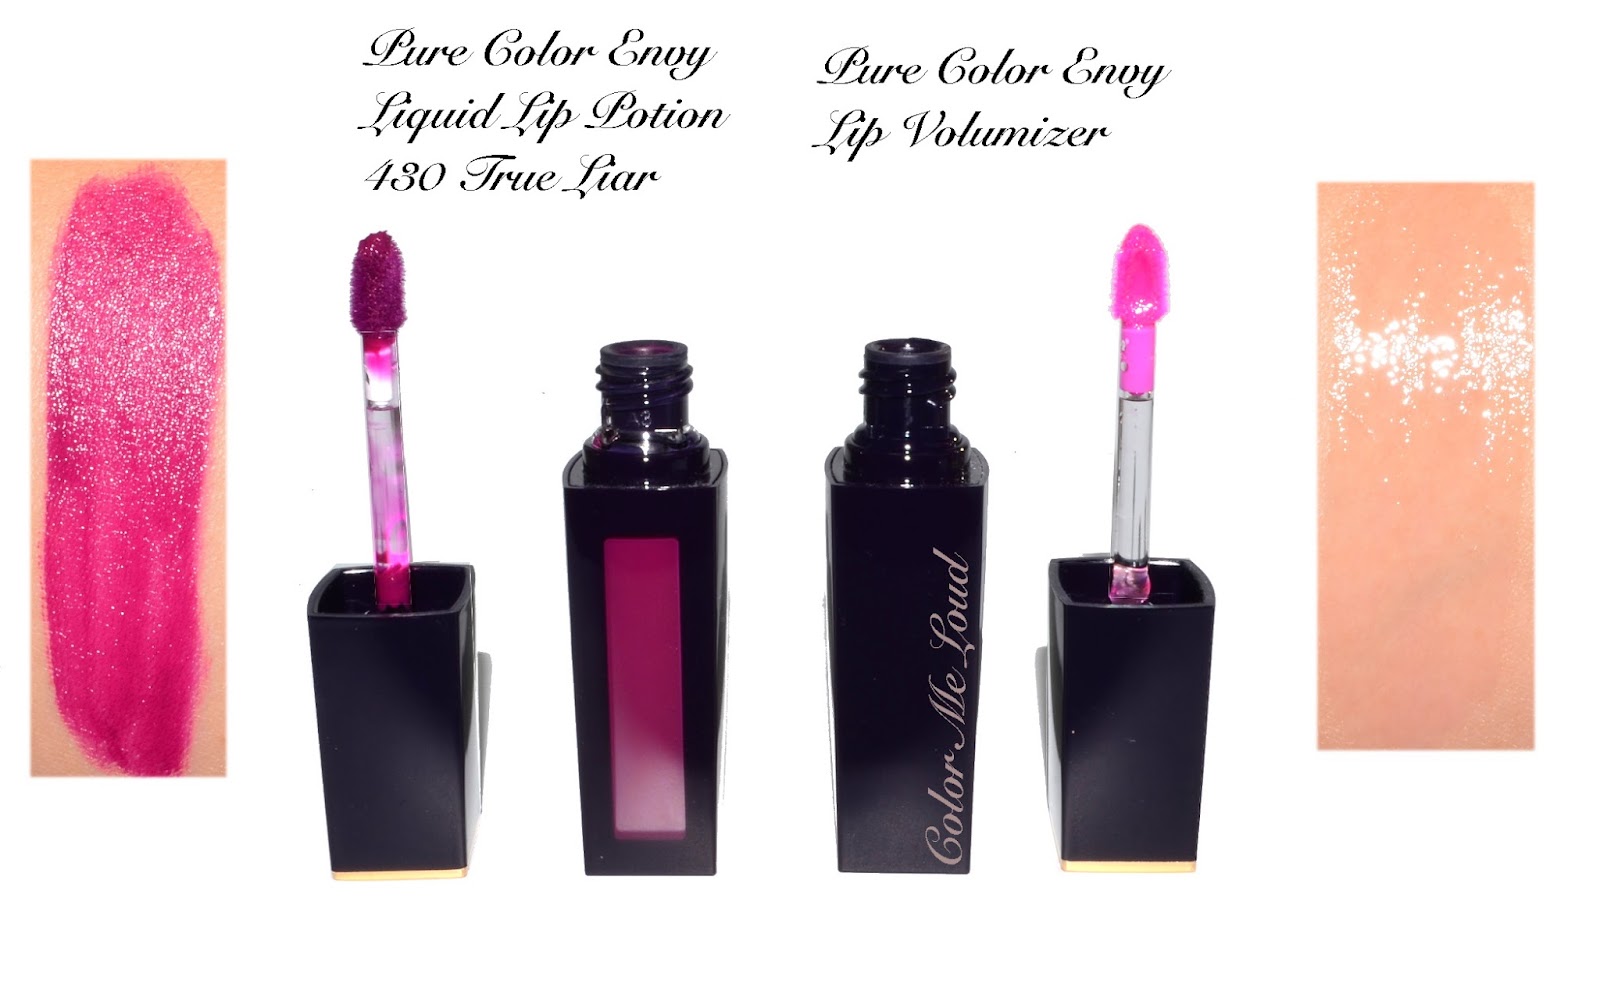 Estée Lauder Pure Color Envy Liquid Lip Potion 430 True Liar & Lip